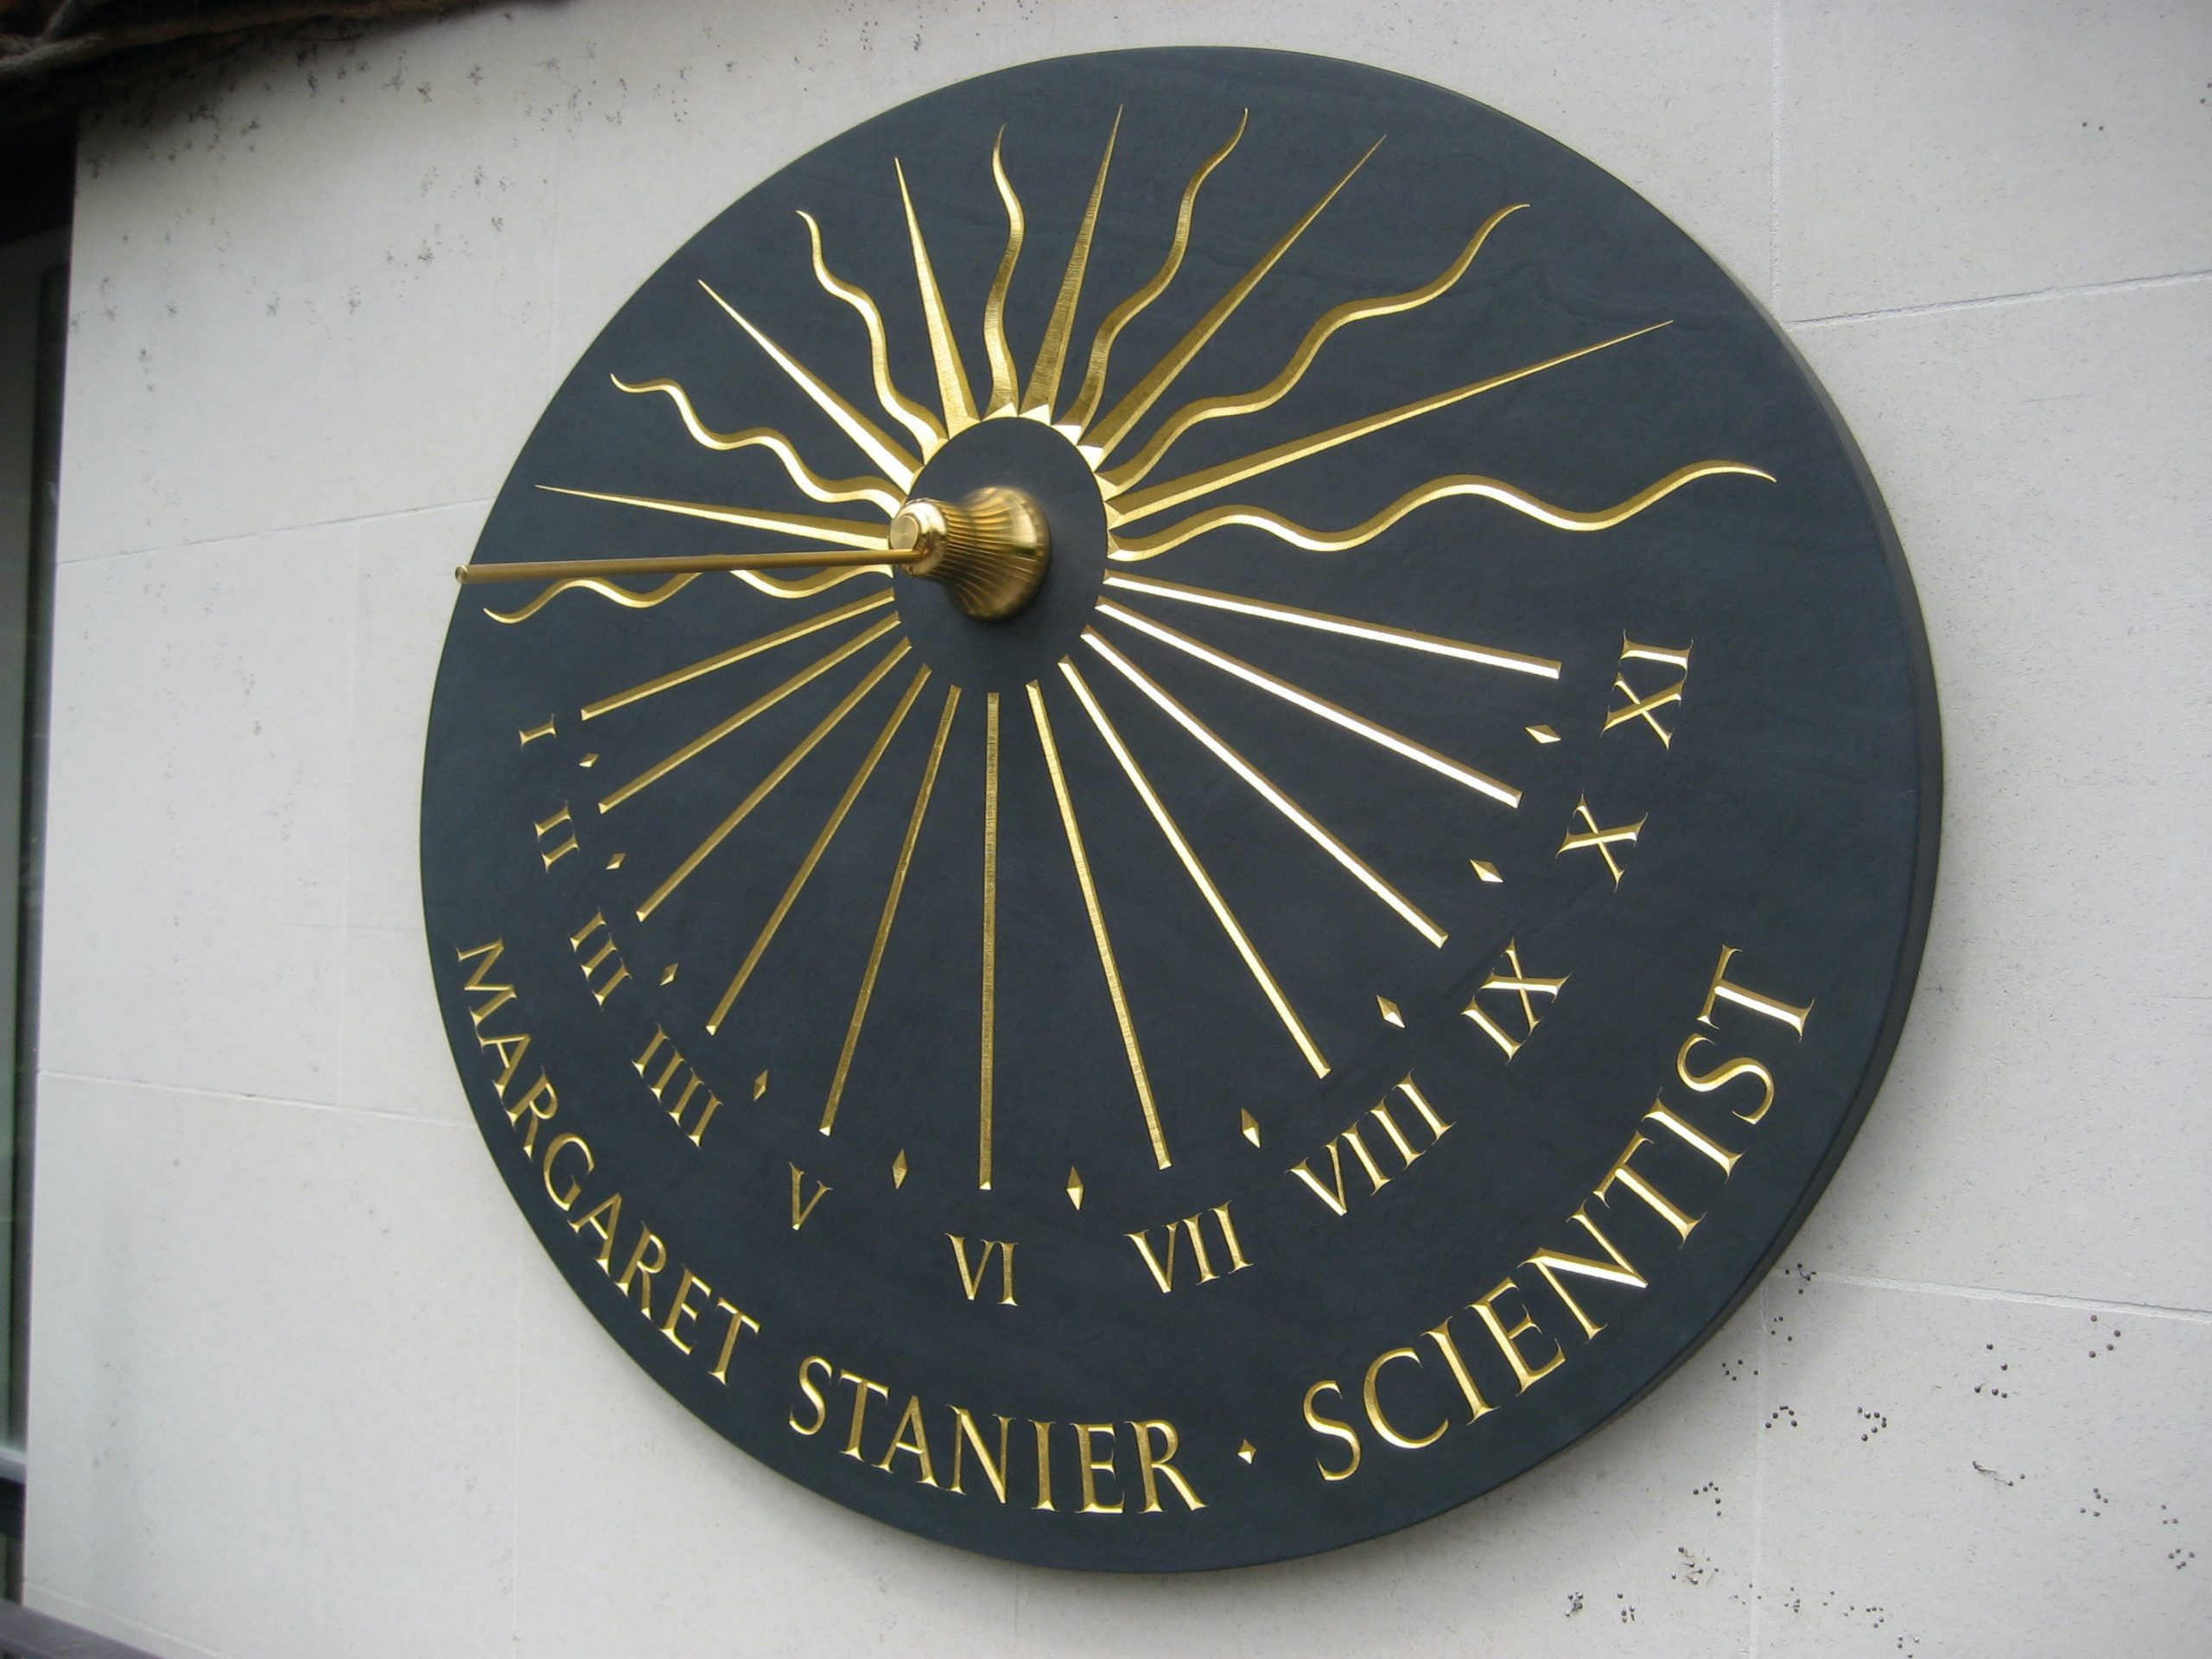 The Newnham Dial or The Margaret Stanier Memorial Sundial